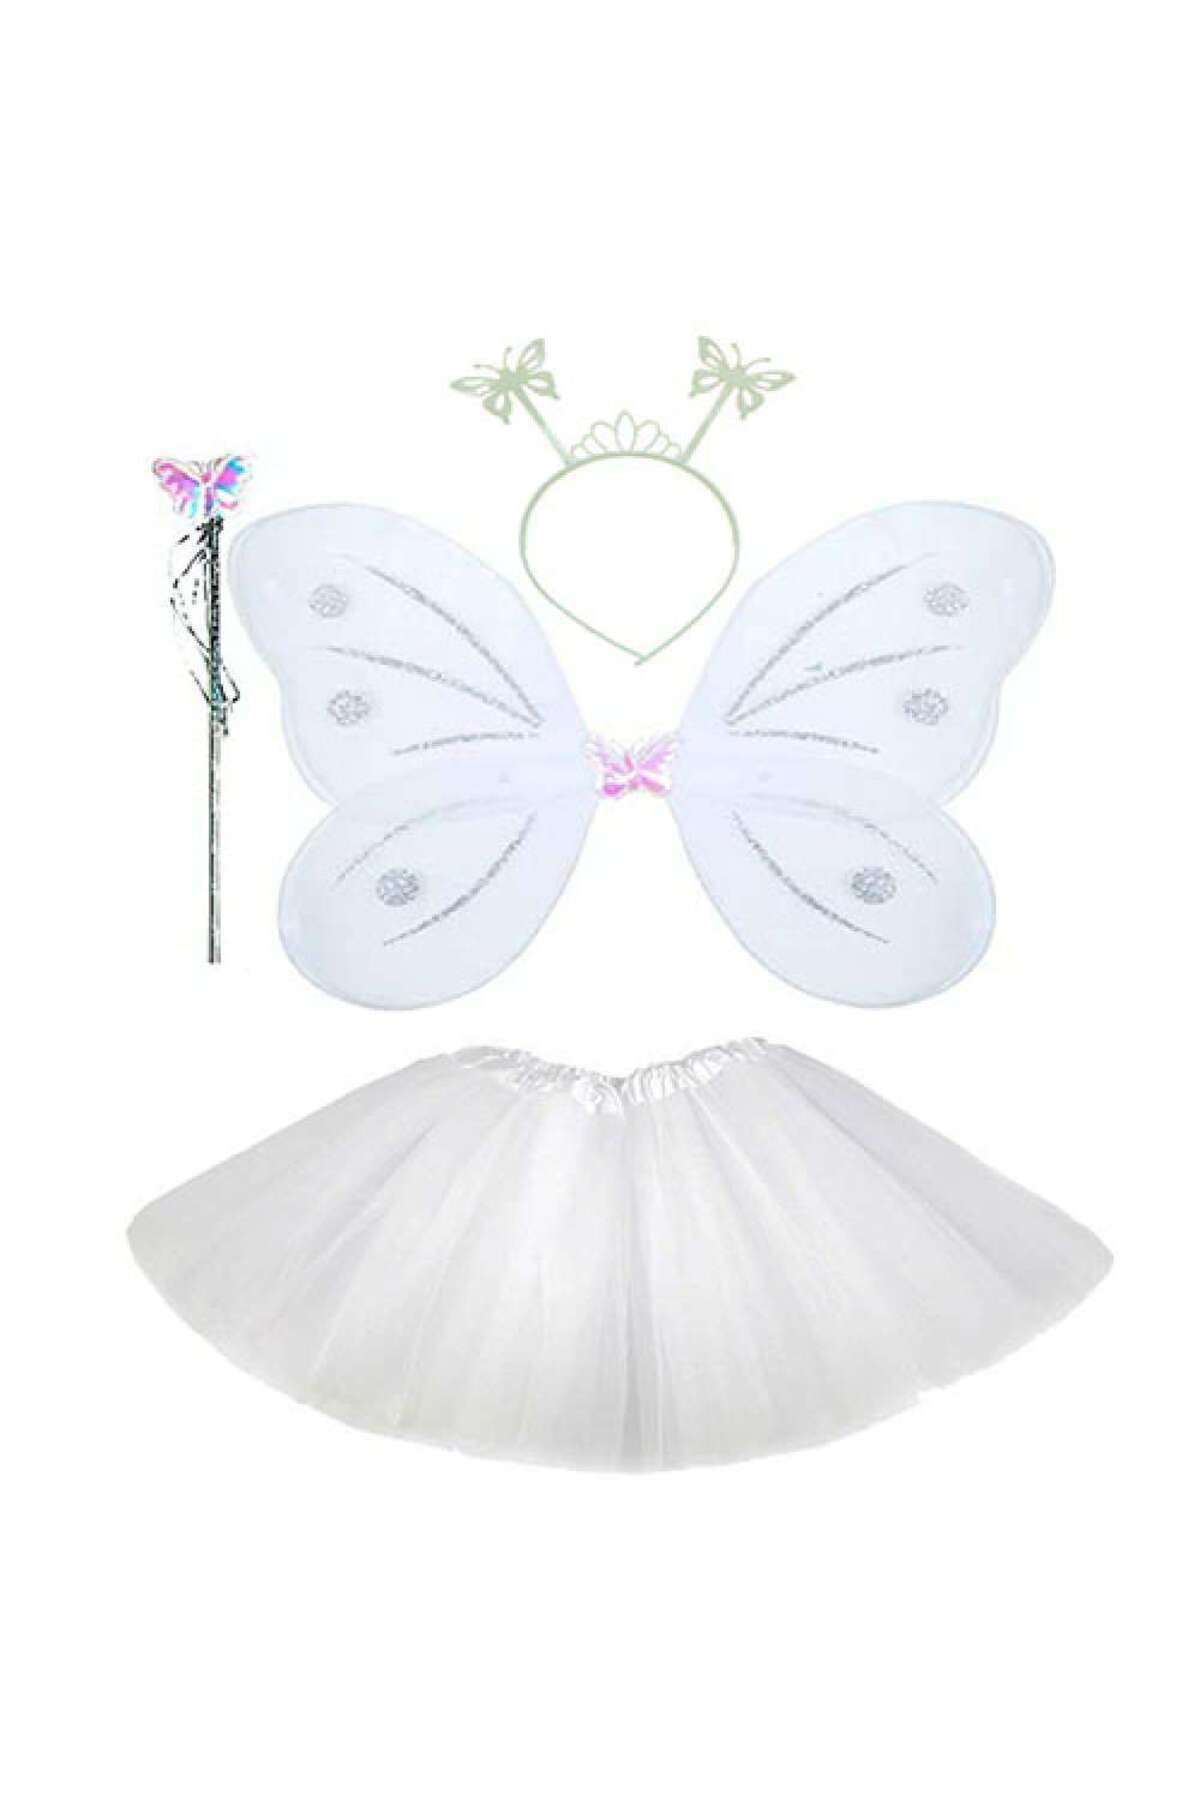 Skygo Beyaz Kelebek Kostümü - Beyaz Kelebek Kostüm Aksesuar Seti 4 Parça